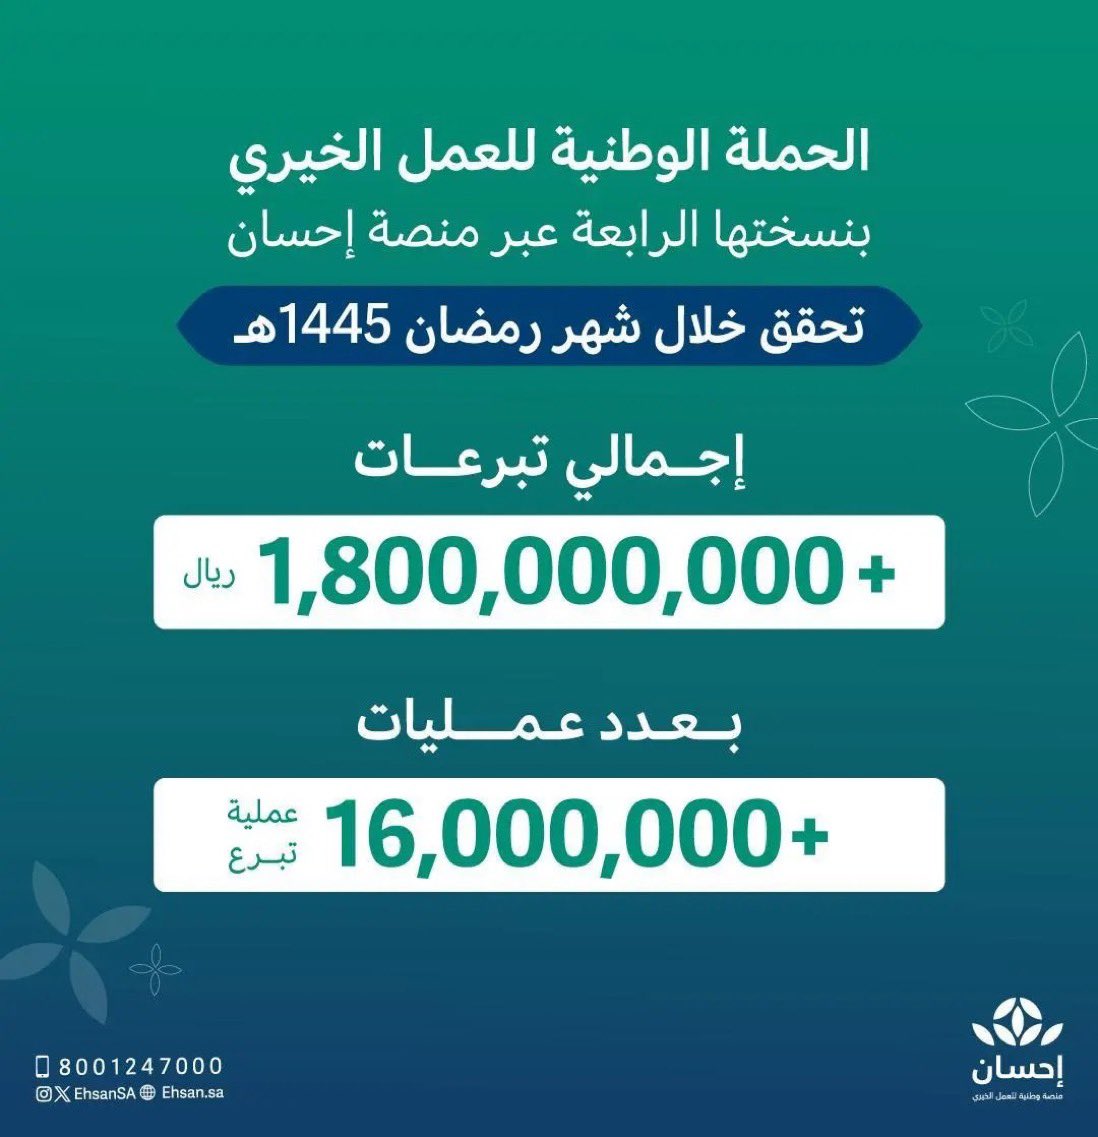 تبرعات الحملة الوطنية للعمل الخيري بنسختها الرابعة تصل لأكثر من مليار و800 مليون ريال في #رمضان  عبر #منصة_إحسان.